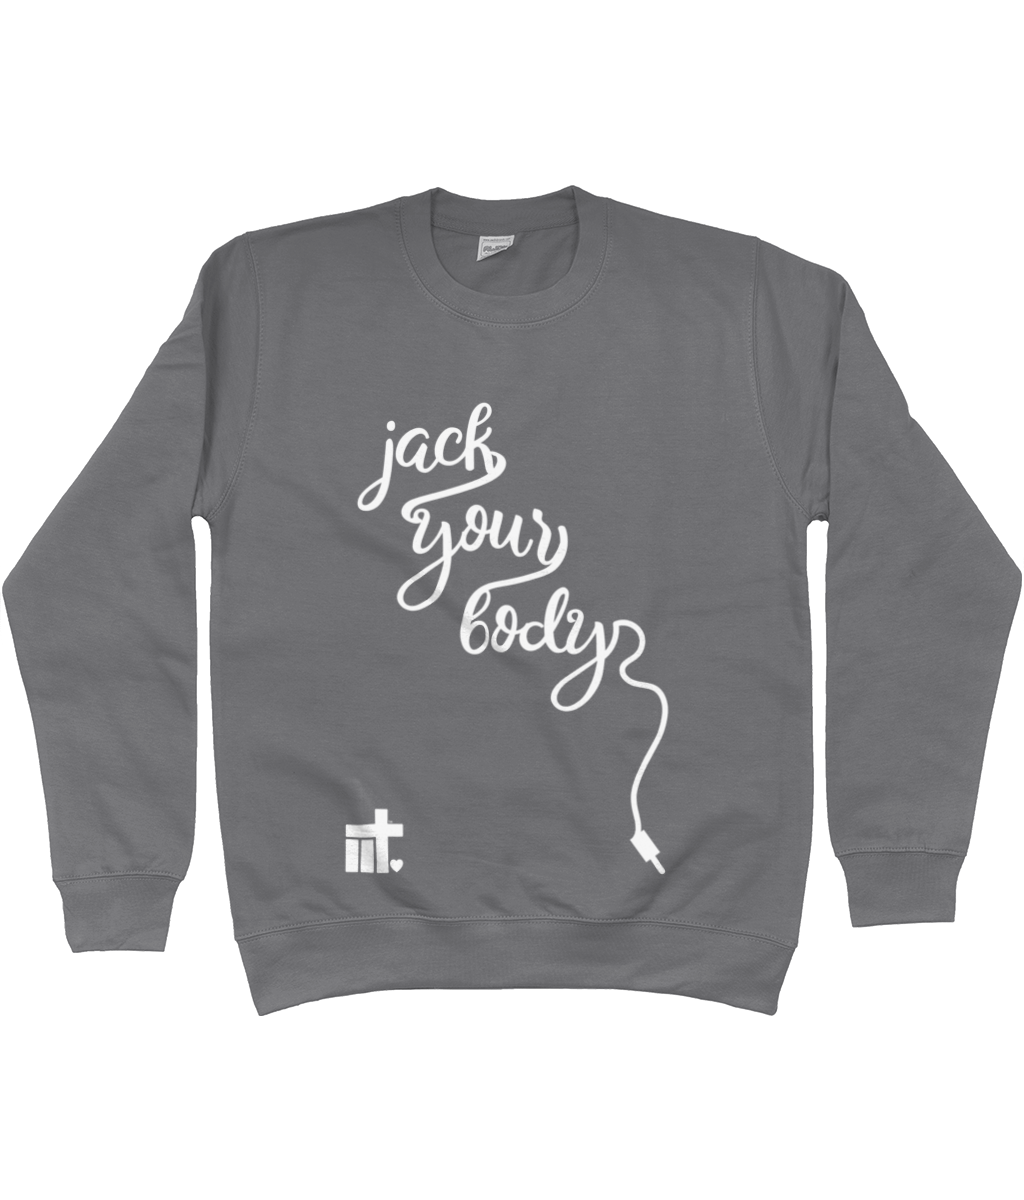 Sweatshirt Jack Cable